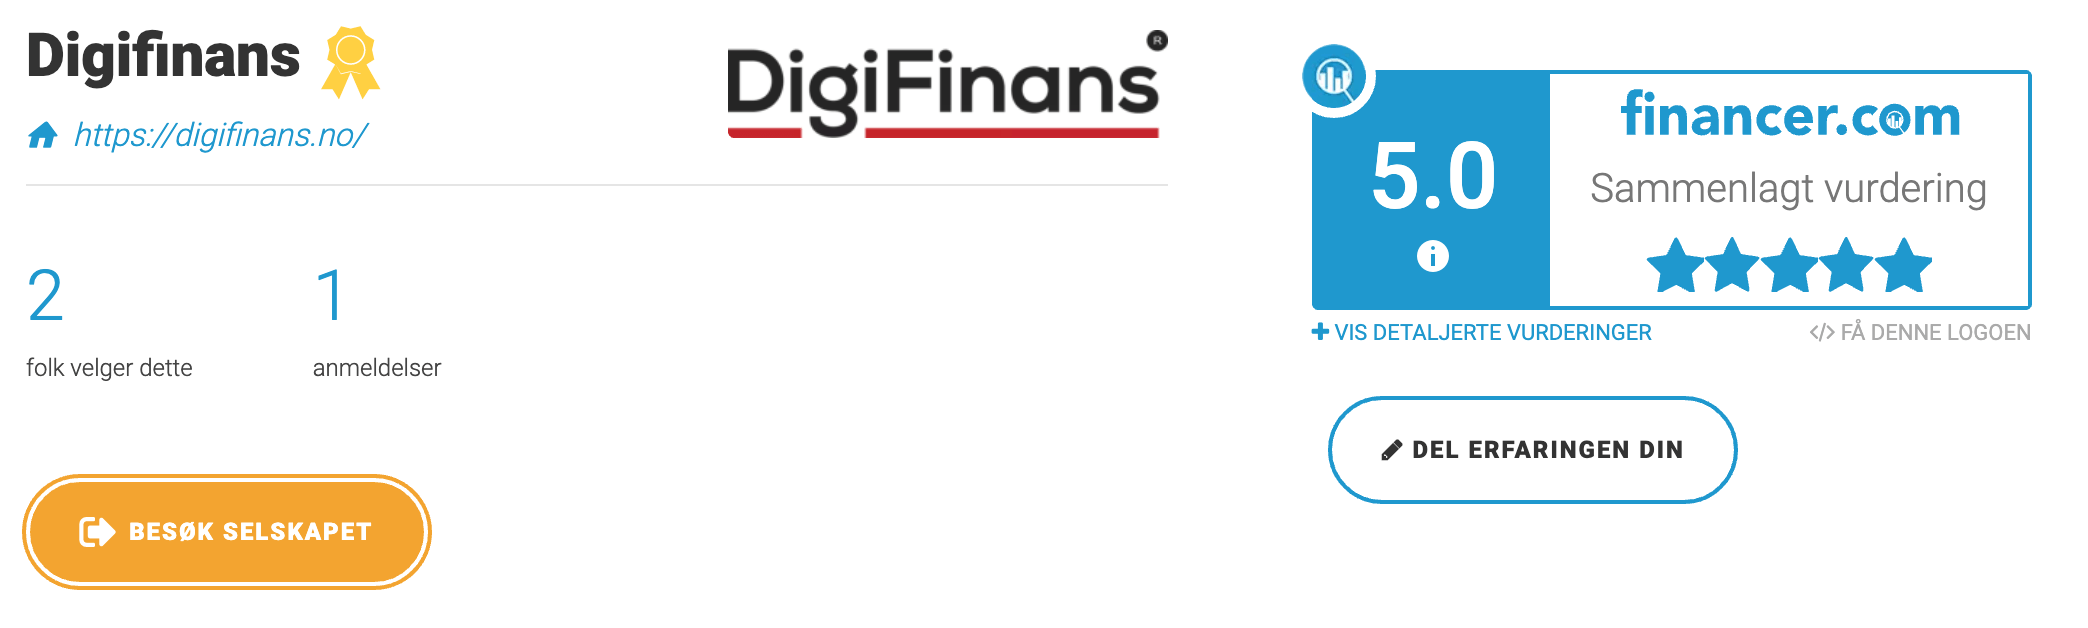 DigiFinans & Financer